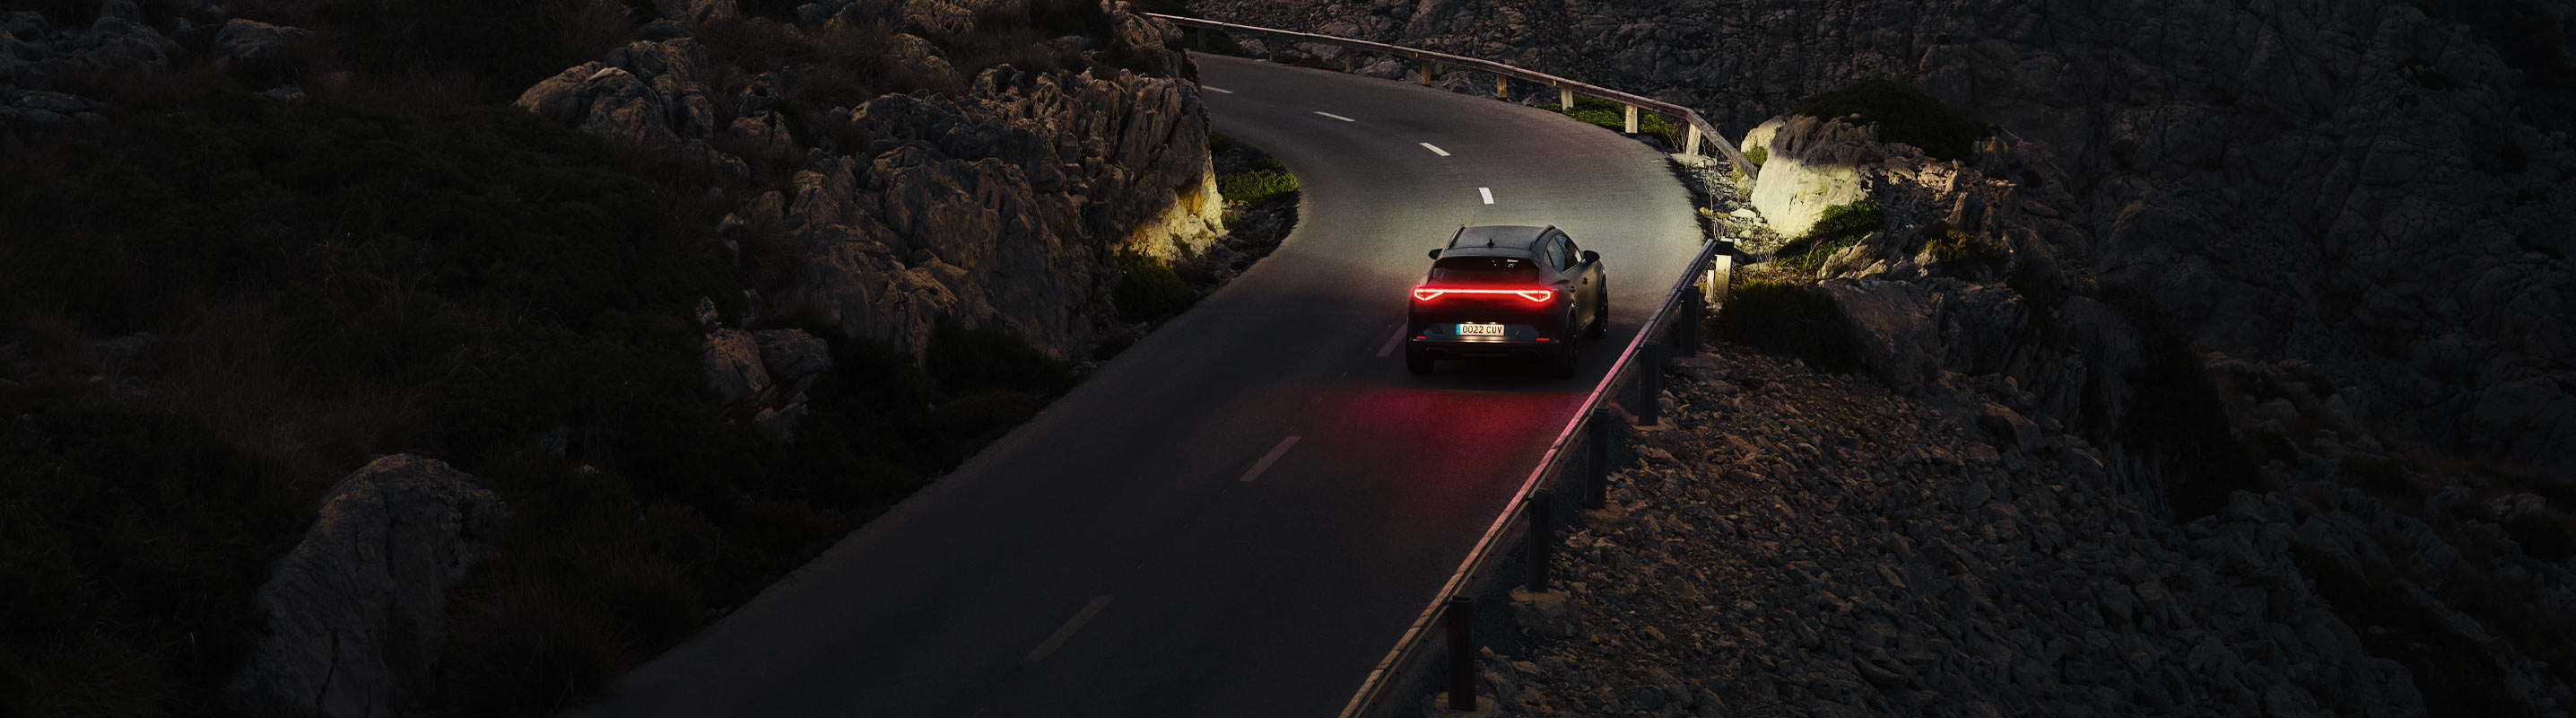 Cupra Formentor en la carretera con las luces LED encendidas 